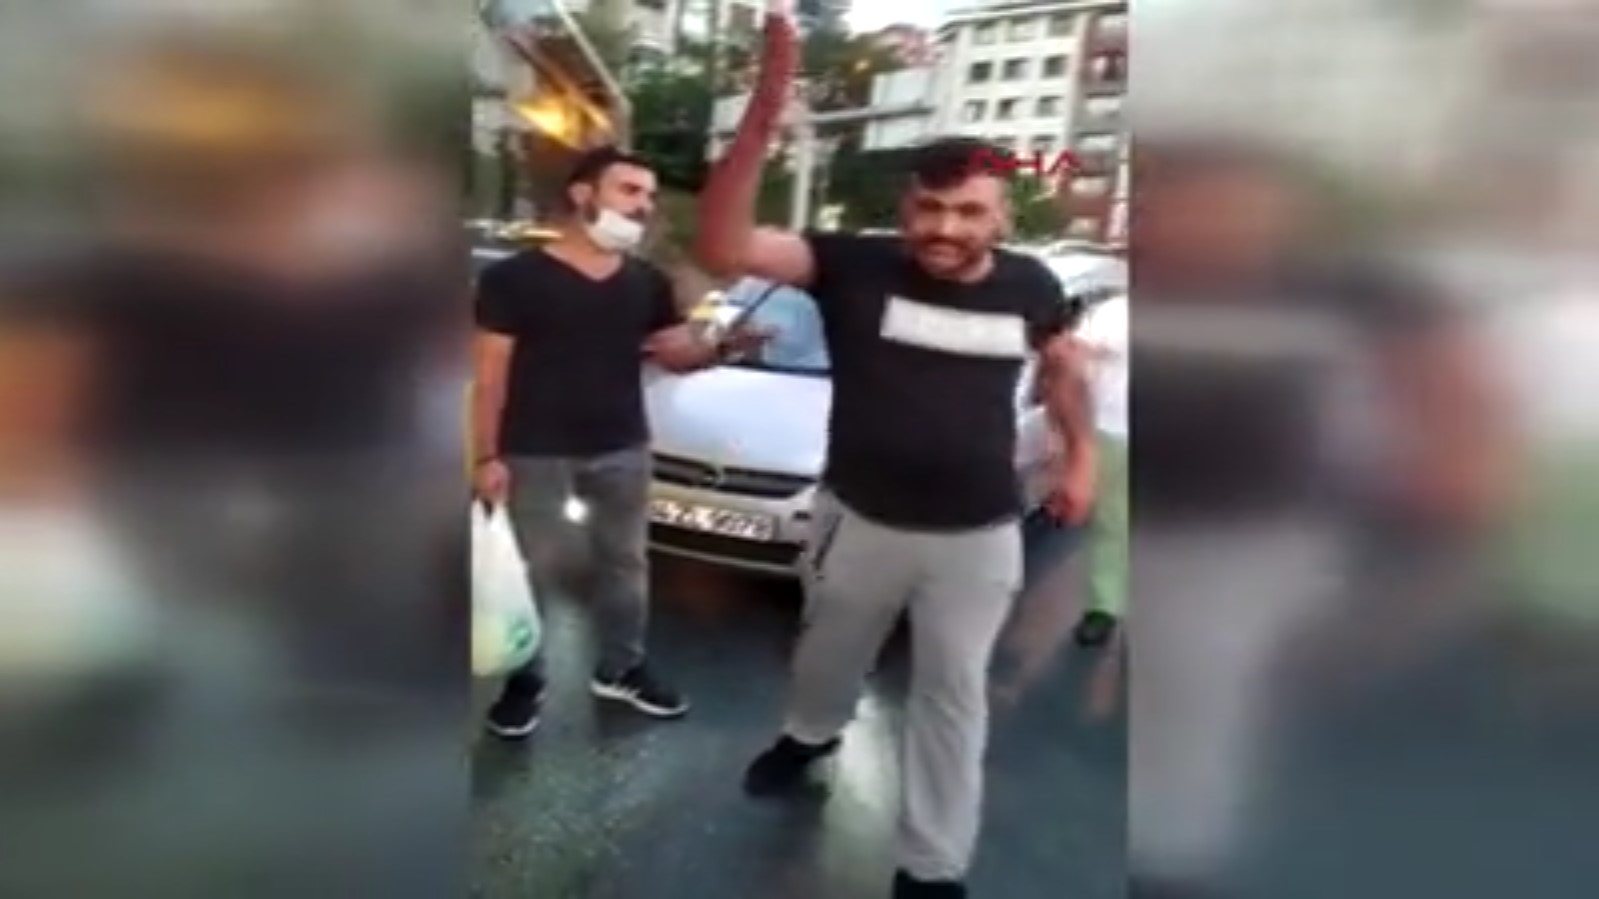 Alibeyköy de bir kişi trafikte kadına saldırdı #2